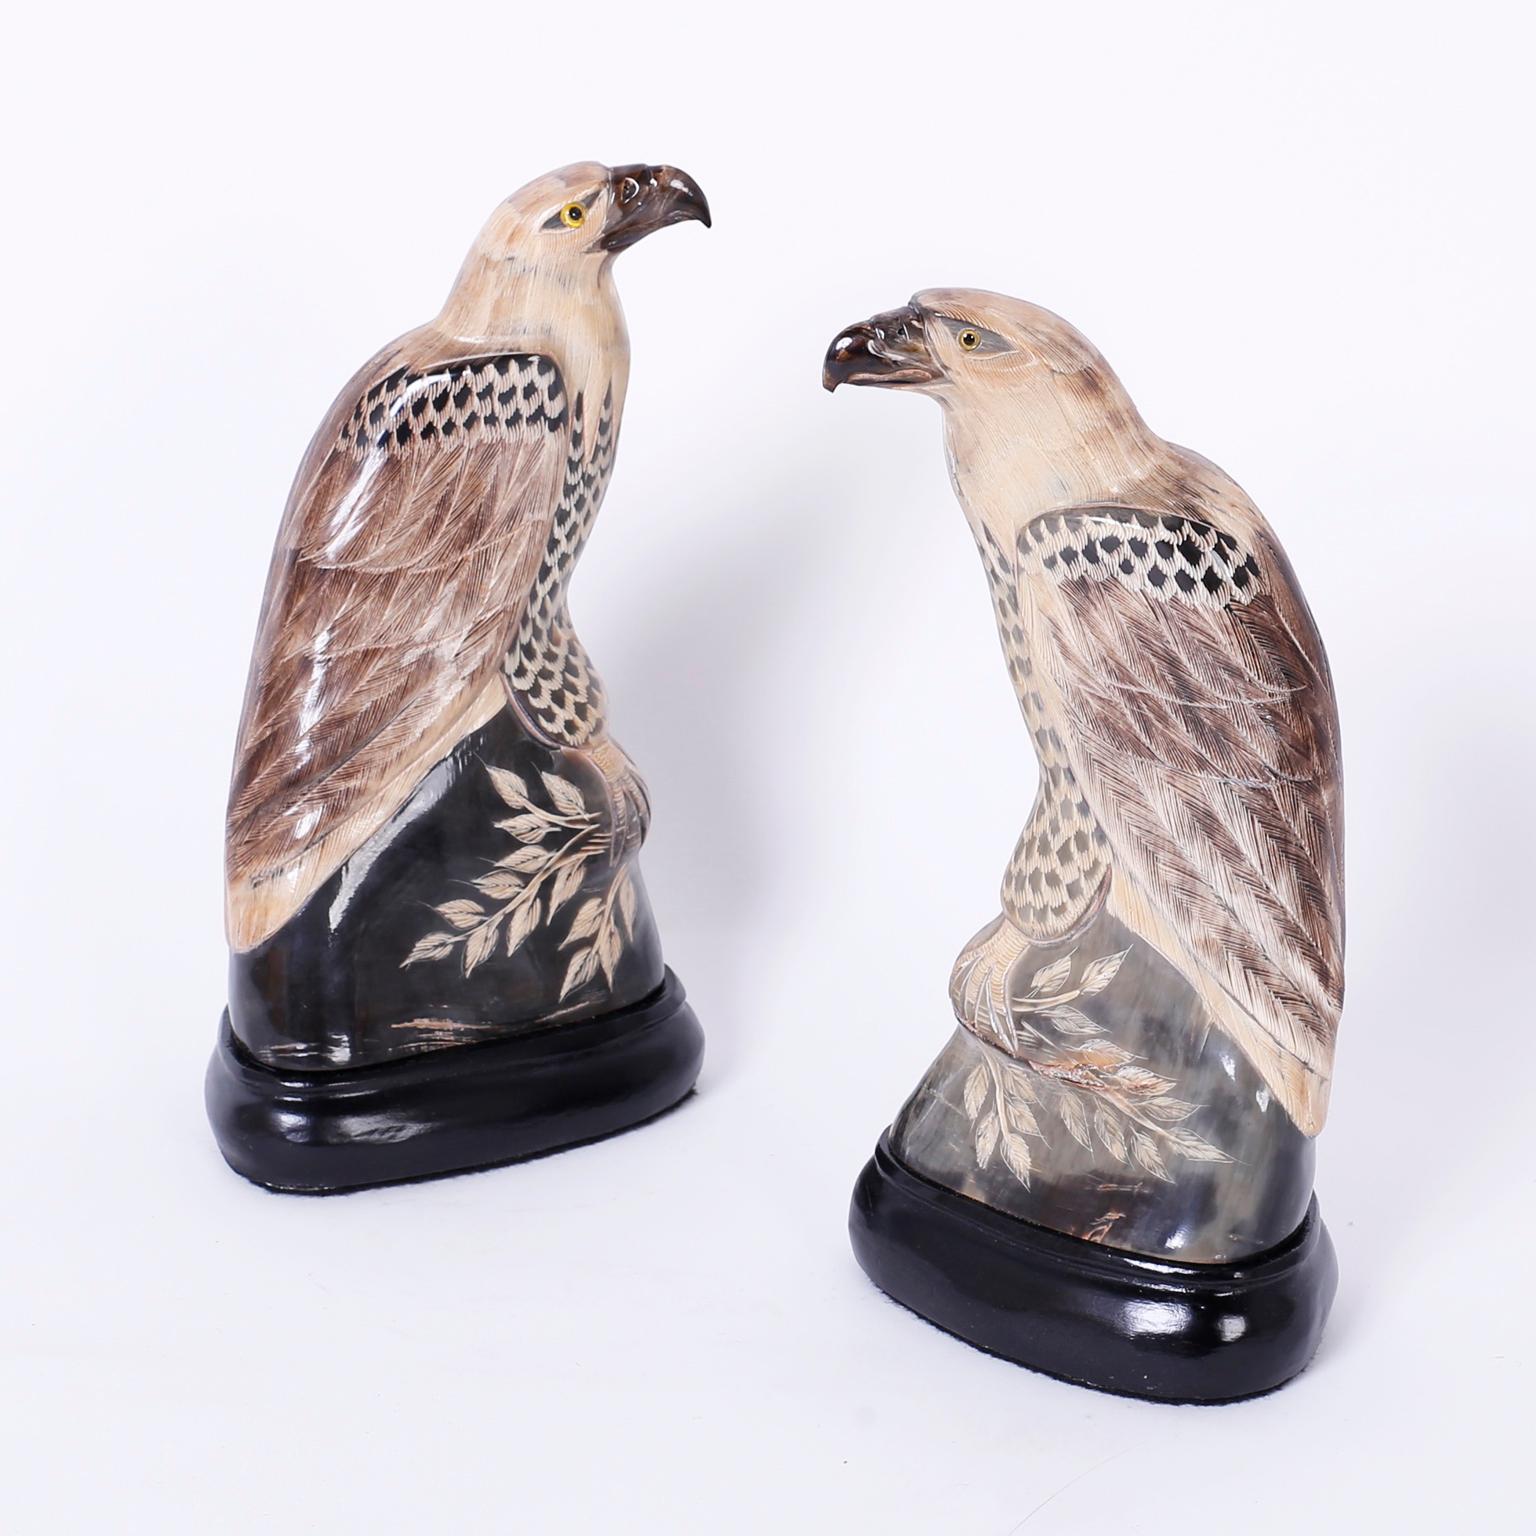 Ein Paar chinesische geschnitzte und bemalte Hornadler oder Falken mit einer verführerischen, stilisierten Interpretation dieser majestätischen Raubvögel.